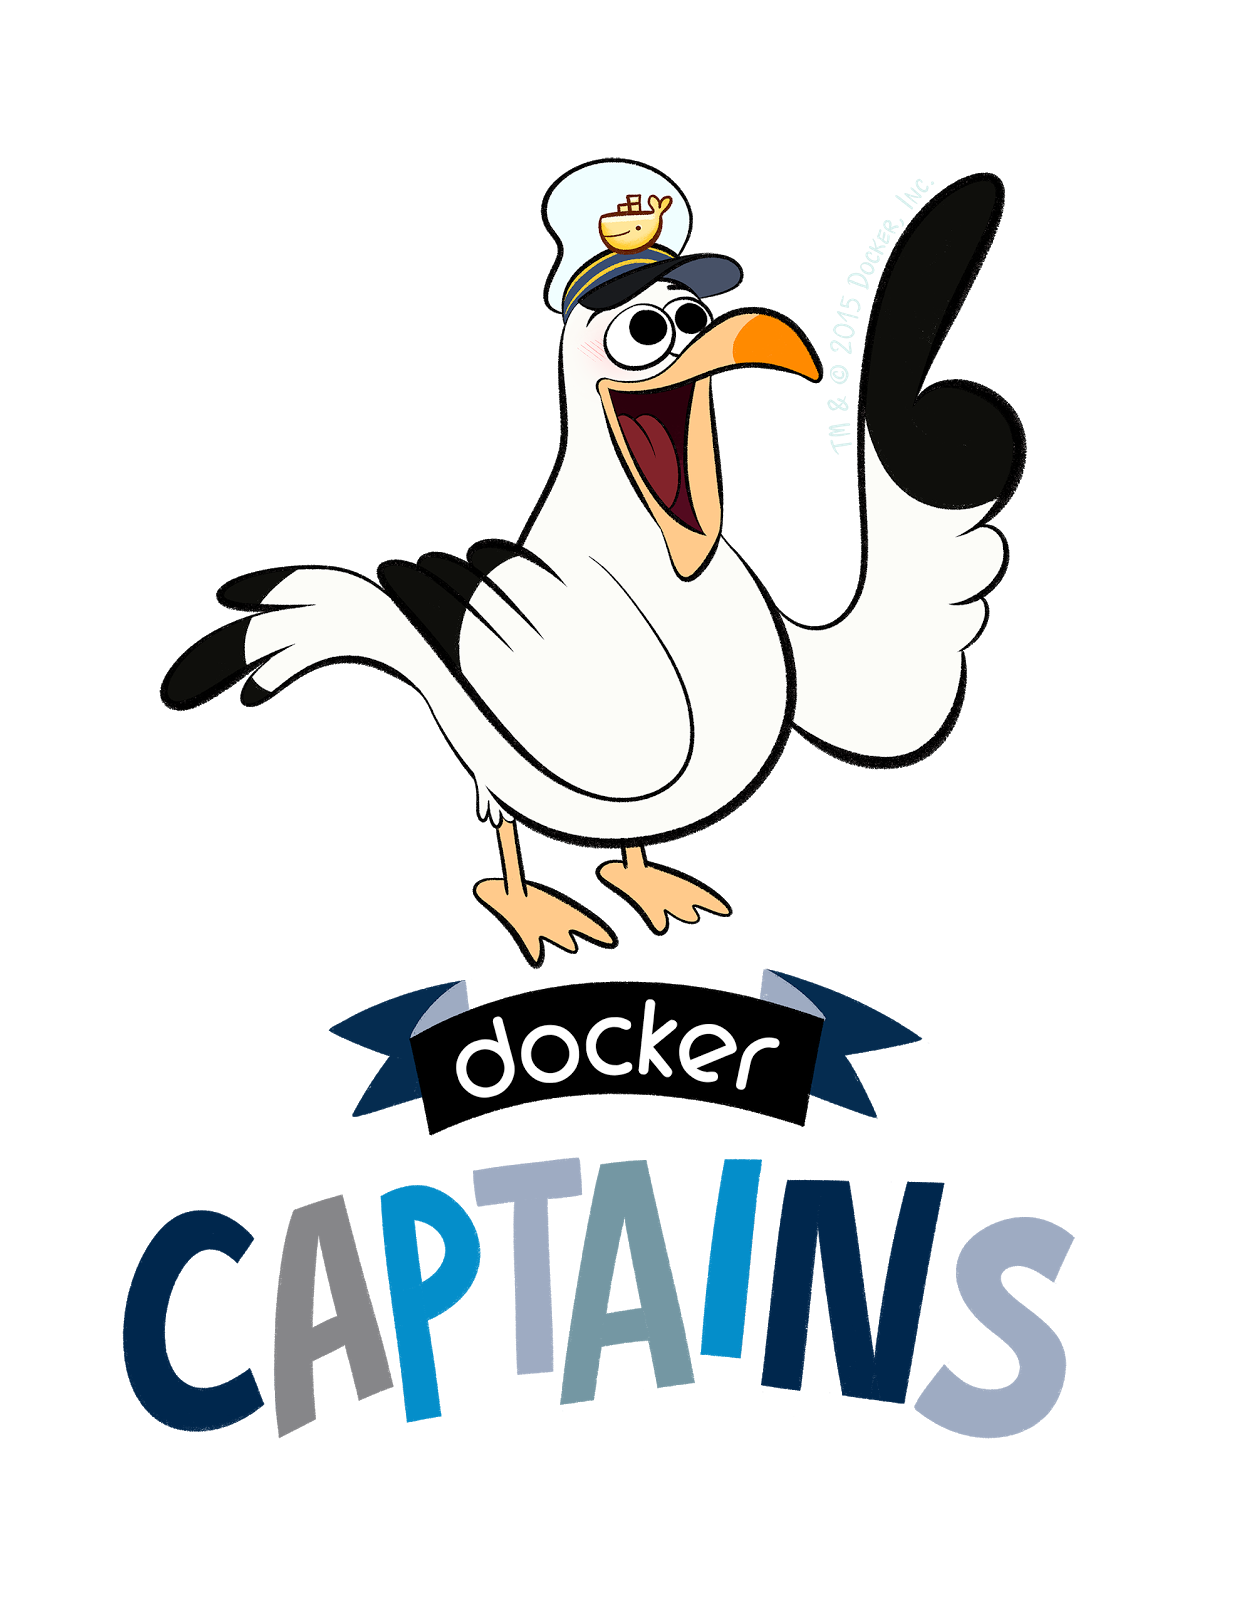 Docker Captain logo